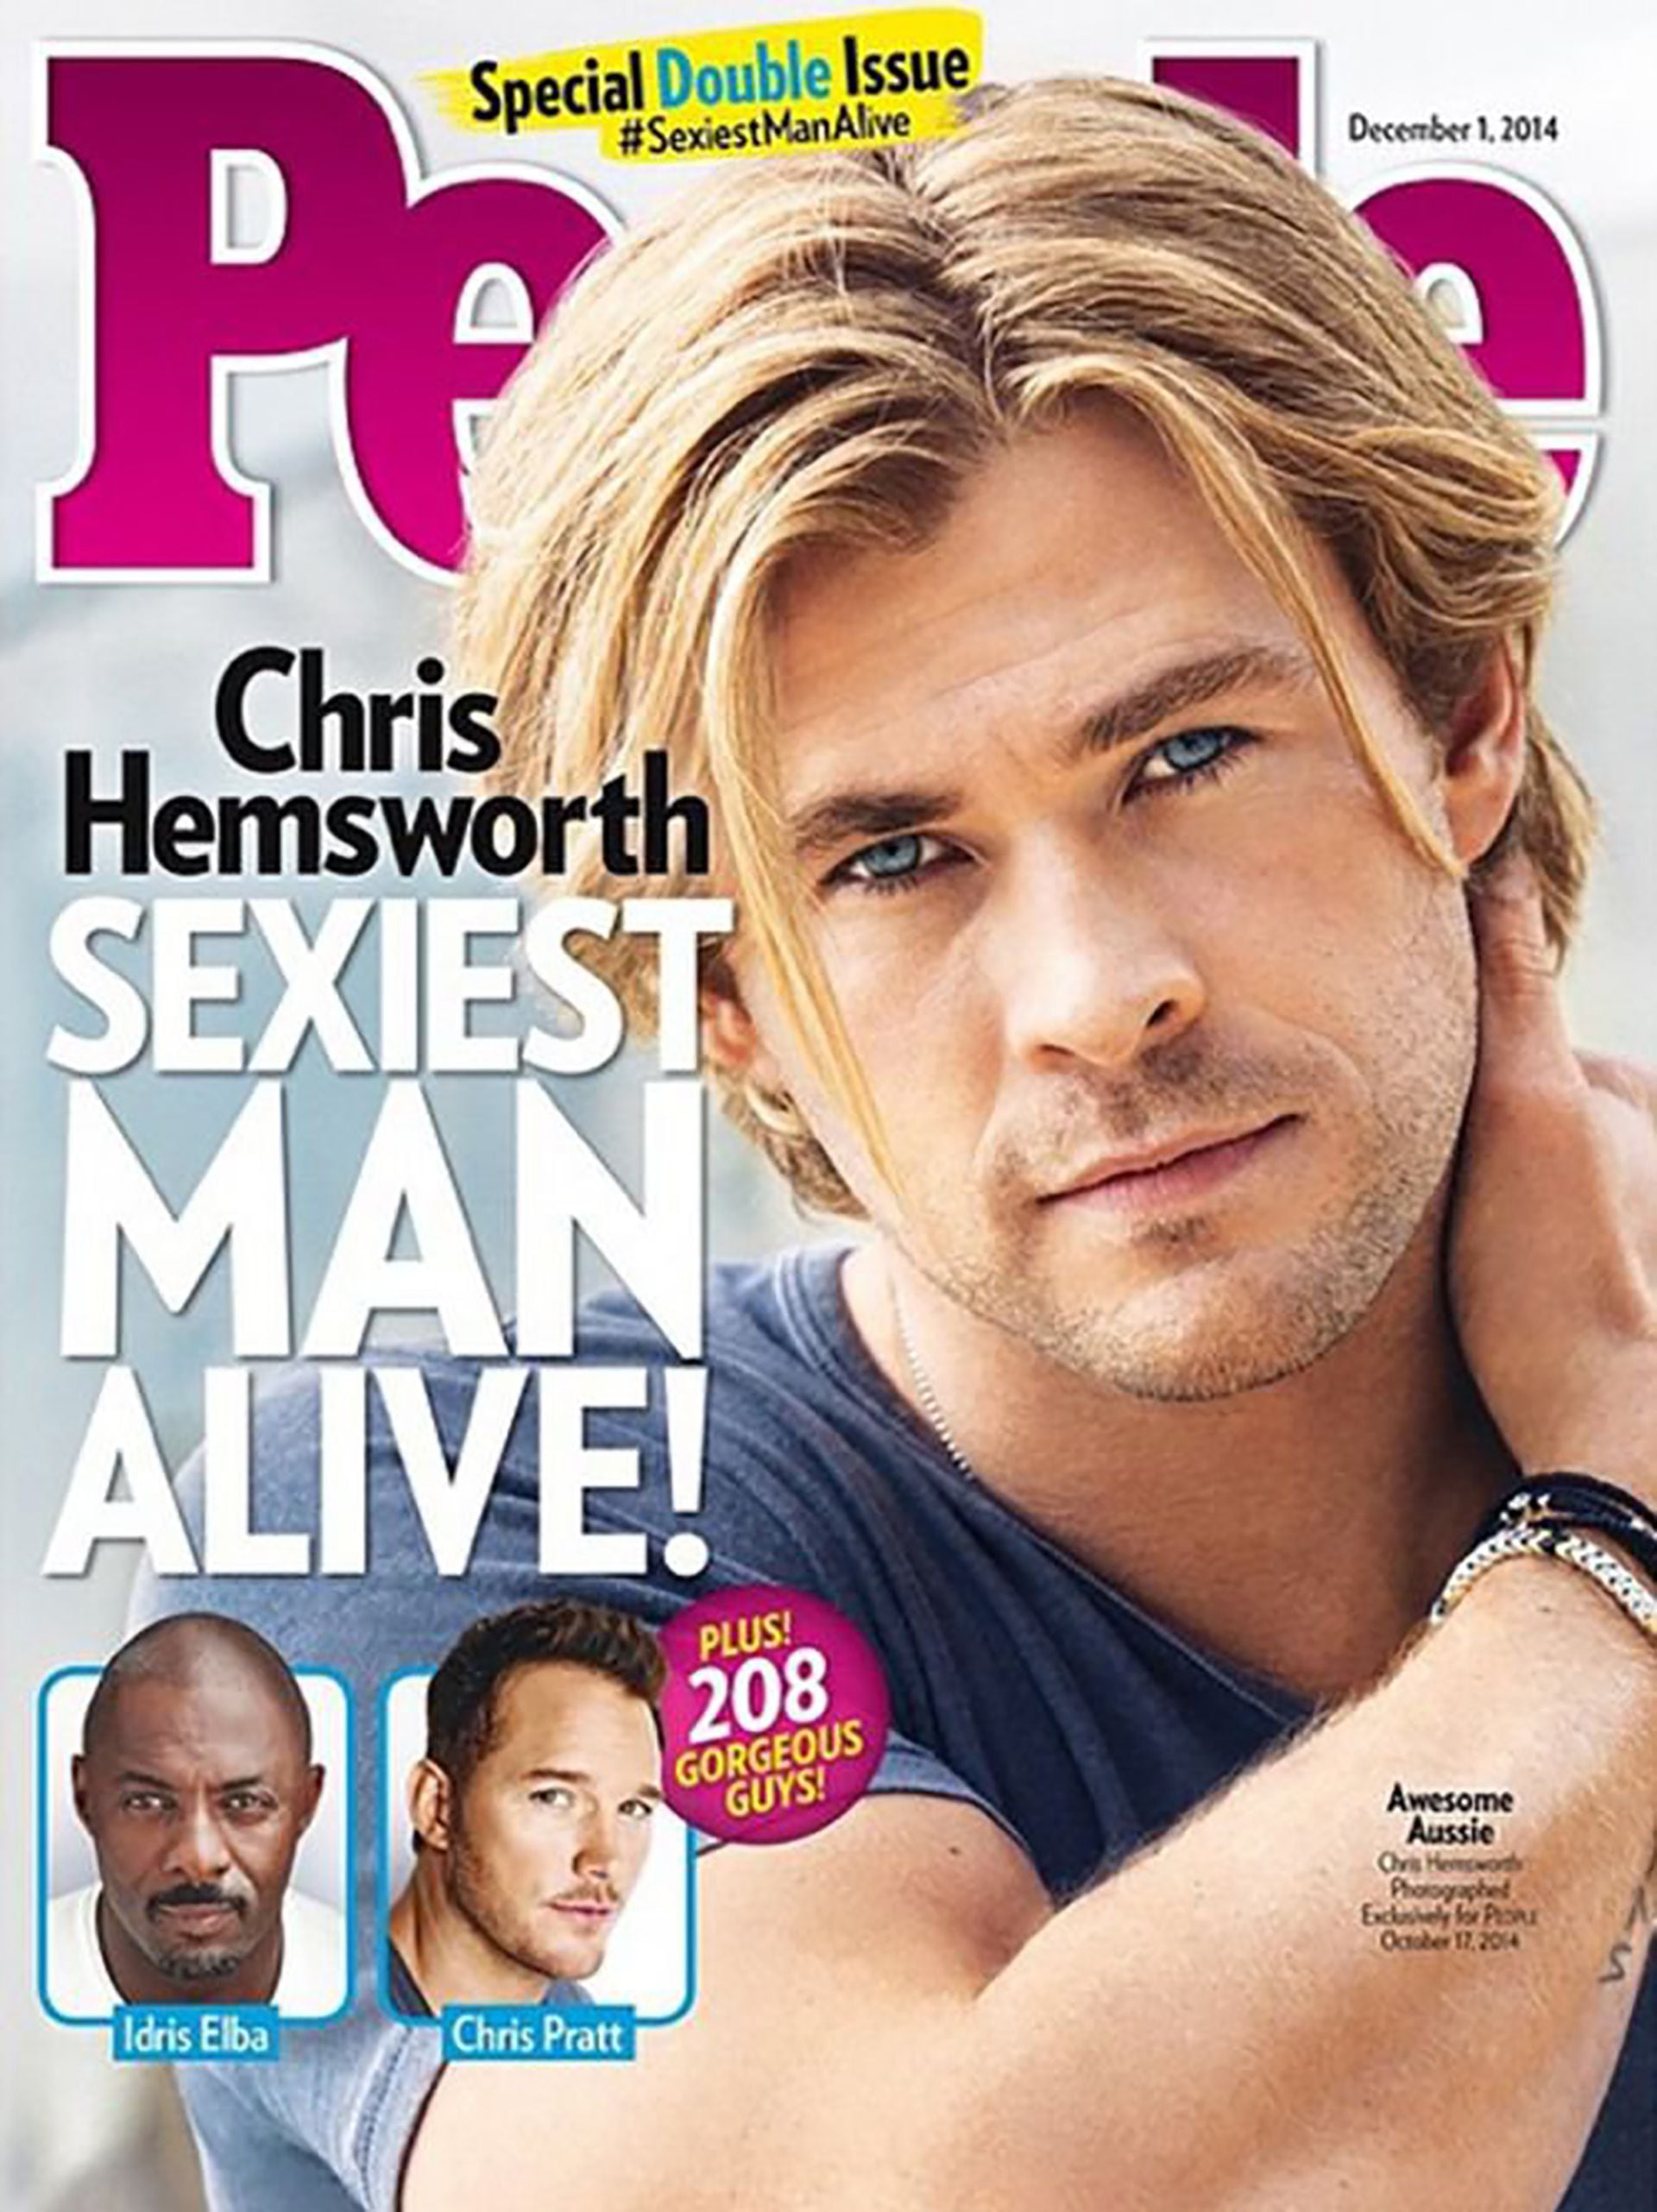 Chris Hemsworth, elegido el hombre más sexy del mundo por People, en 2014